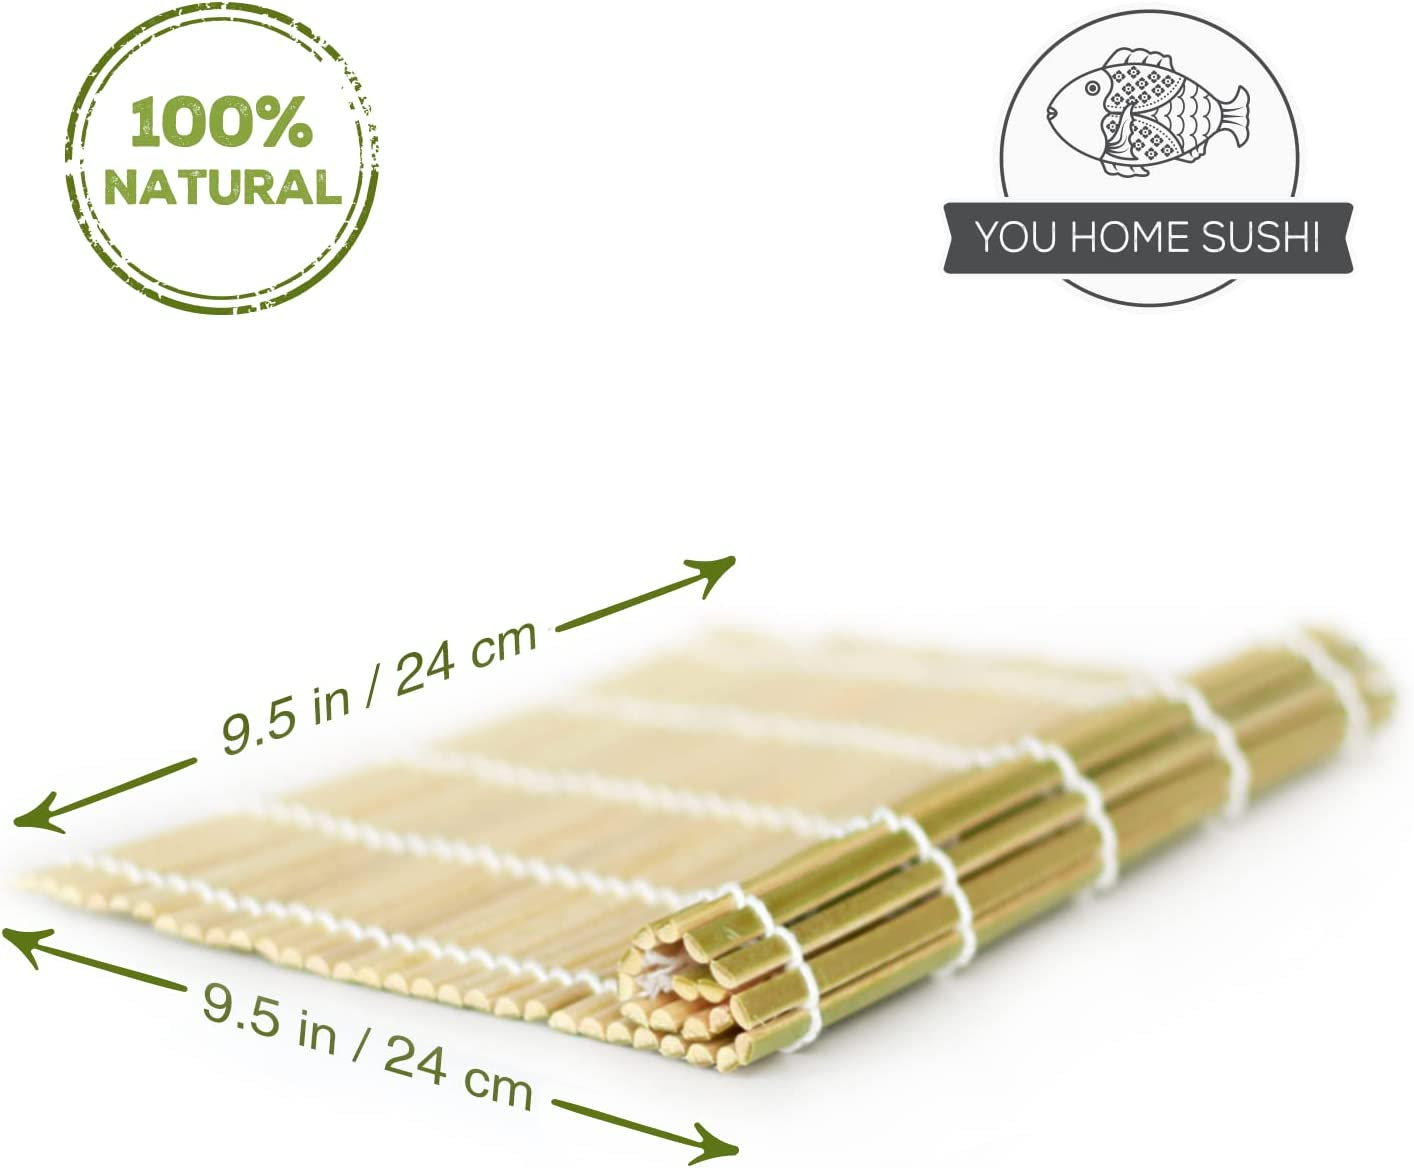 Sushi Making Kit - Original AYA Eco Sushi Kit MAX - All Natural Eco-Friendly - Biodegradable Bamboo - 2 Sushi Mats - 5 Pairs of Chopsticks - 1 Paddle - 1 Spreader - 1 Bazooka - 1 Nigiri Maker